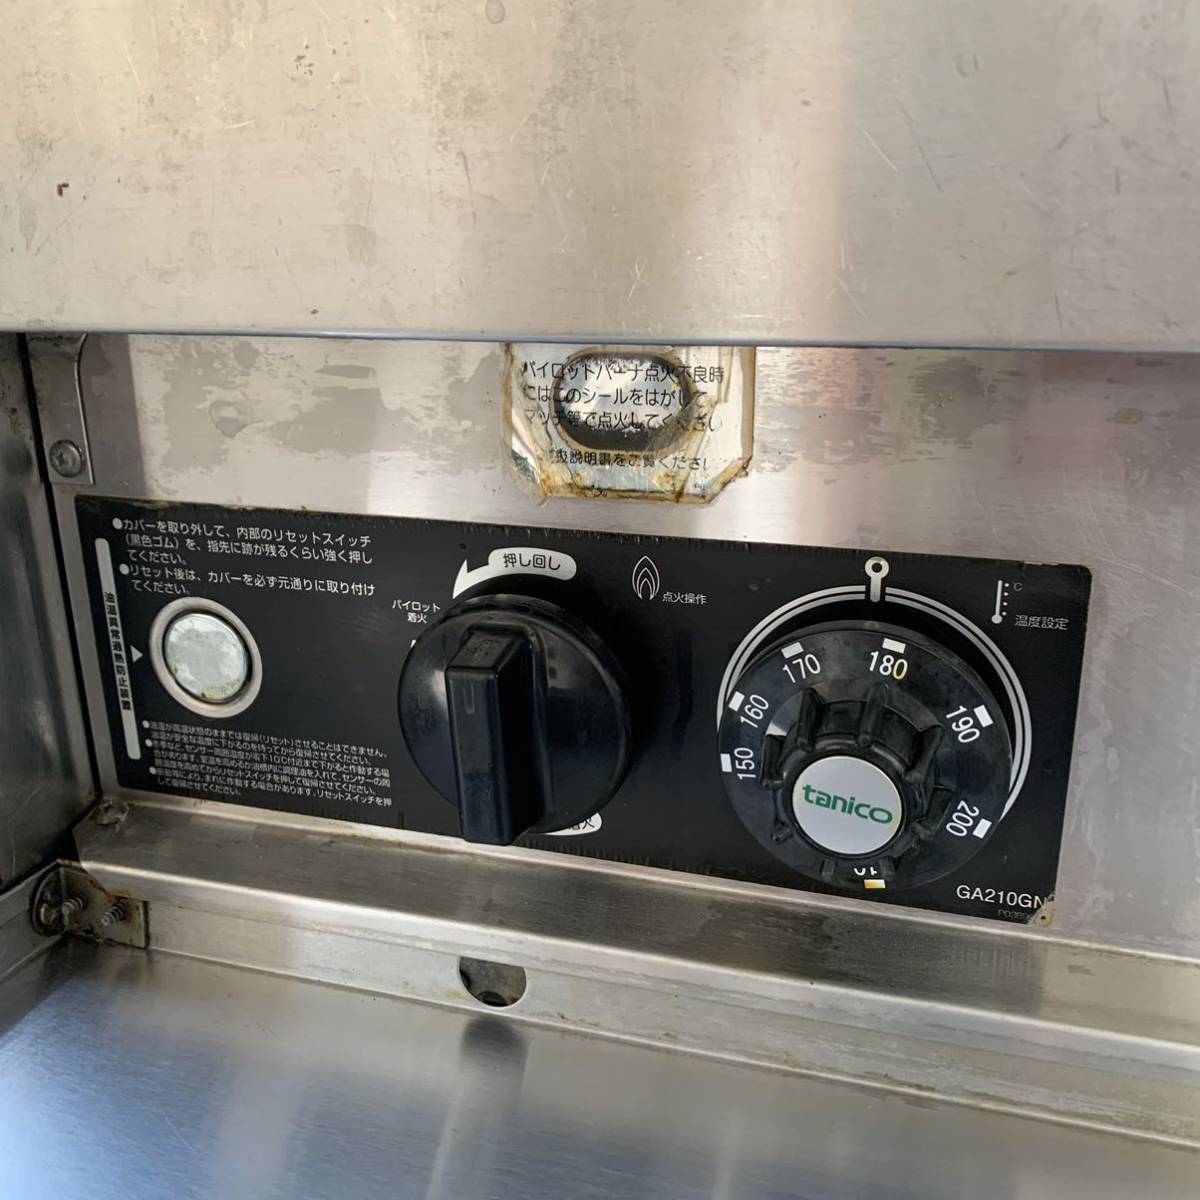 tanico/タニコー ガスフライヤー 都市ガス 厨房機器 厨房用品 業務用 店舗用 2槽ガスフライヤー 品